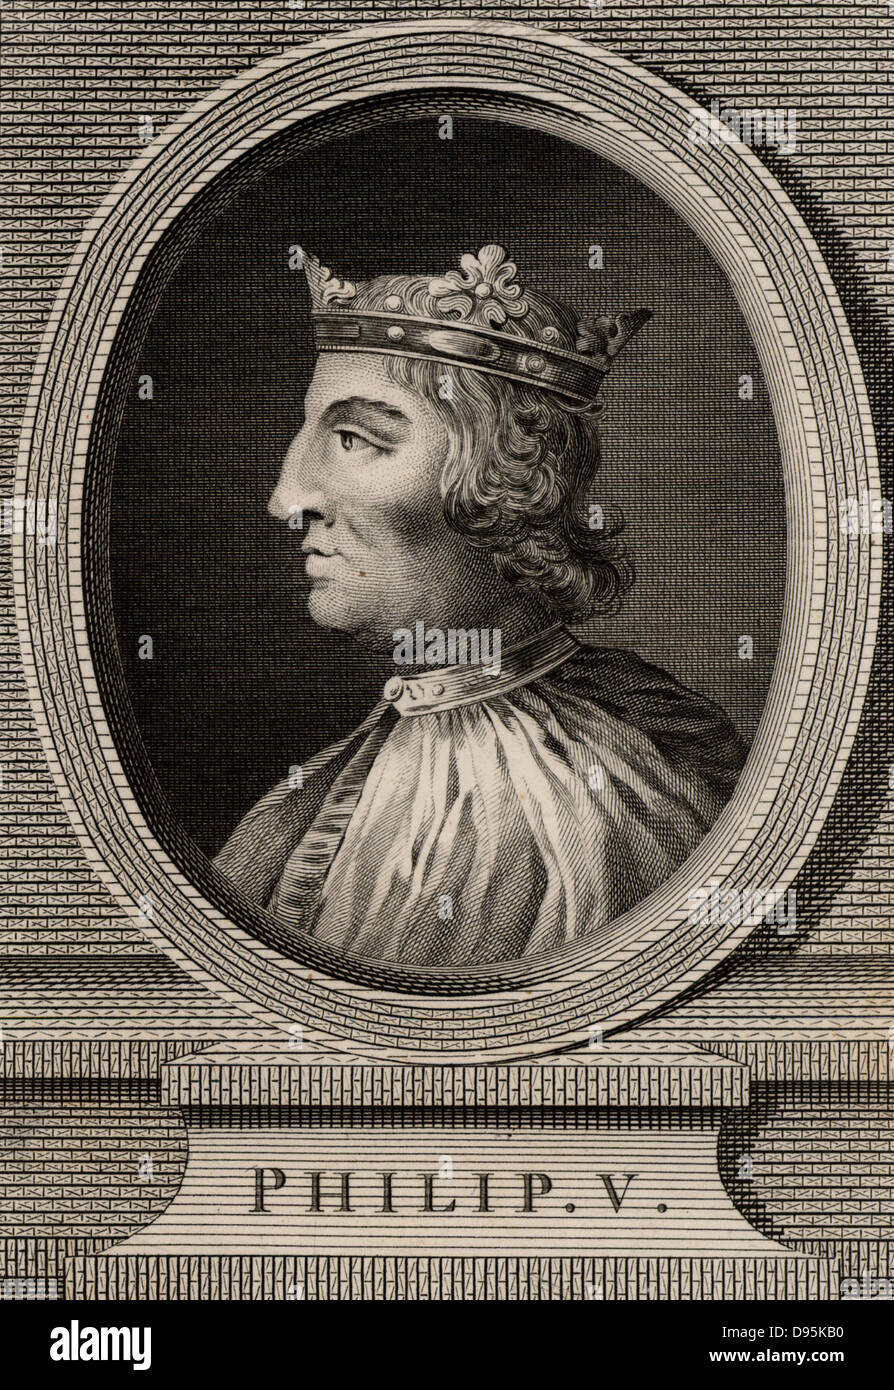 Philippe V, le Grand (1293-1322) membre de la dynastie capétienne, roi de France de 1316. La gravure sur cuivre, 1793. Banque D'Images